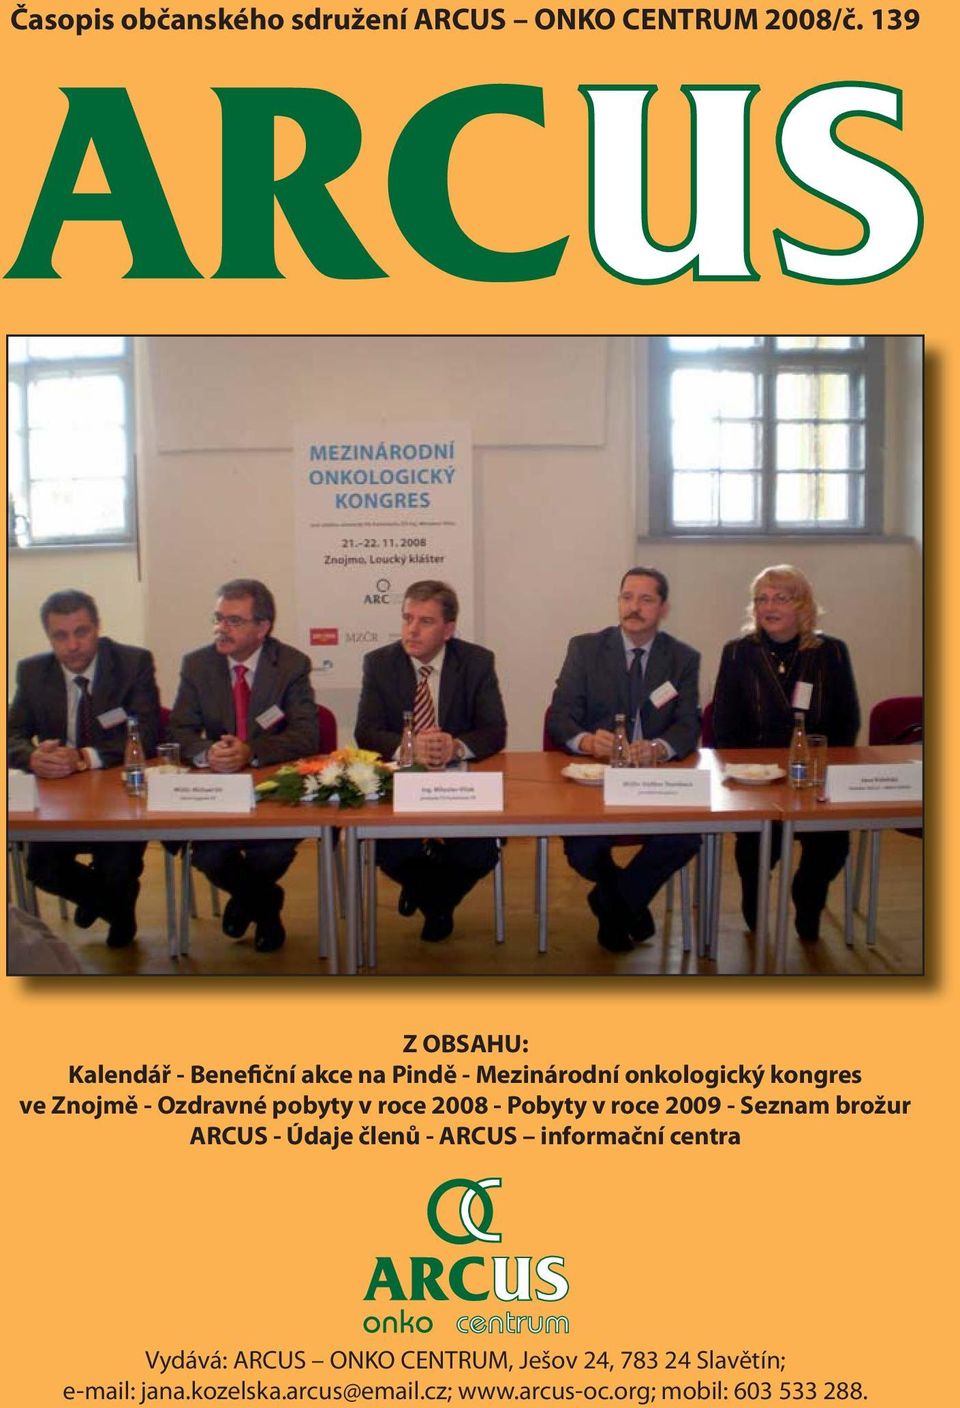 Ozdravné pobyty v roce 2008 - Pobyty v roce 2009 - Seznam brožur ARCUS - Údaje členů - ARCUS